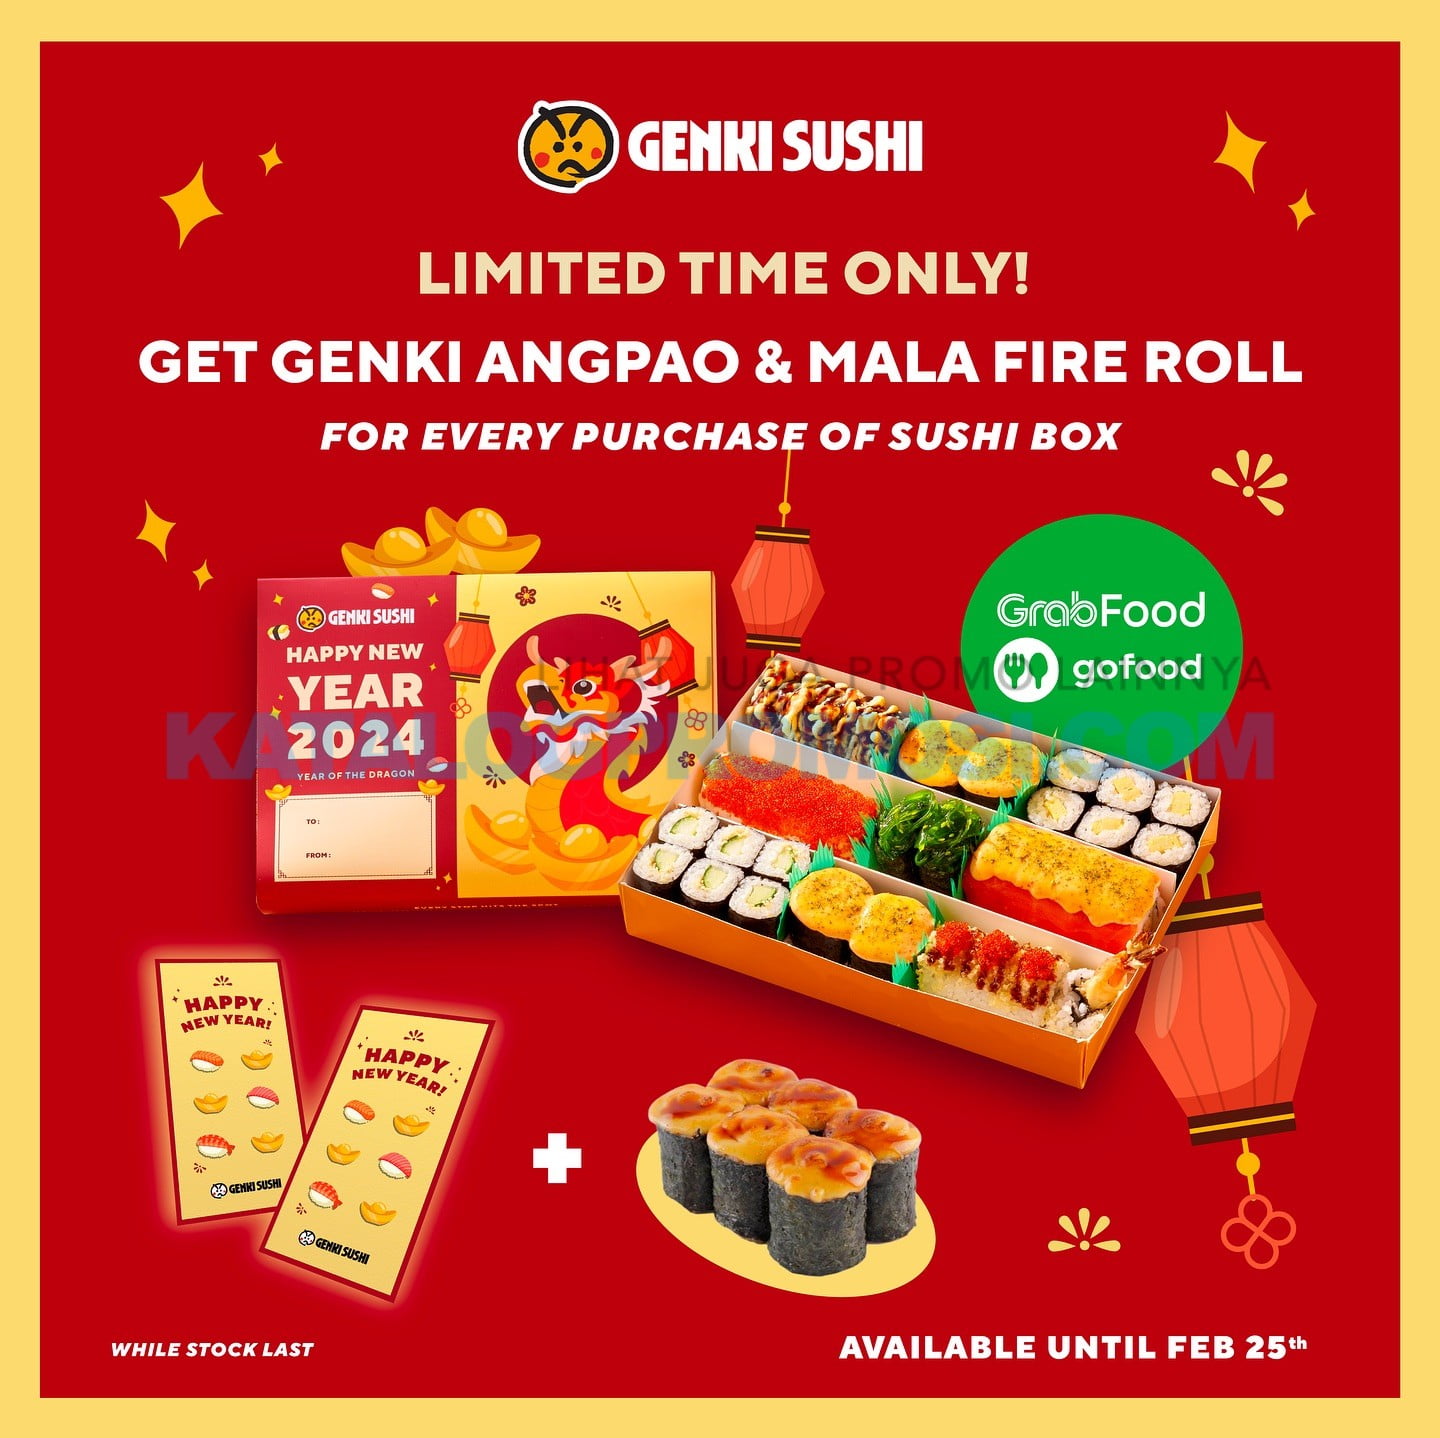 Promo GENKI SUSHI Get Free Angpao + Mala Fire Roll khusus pemesanan via GOFOOD dan GRABFOOD, berlaku sd tanggal 25 Februari 2024